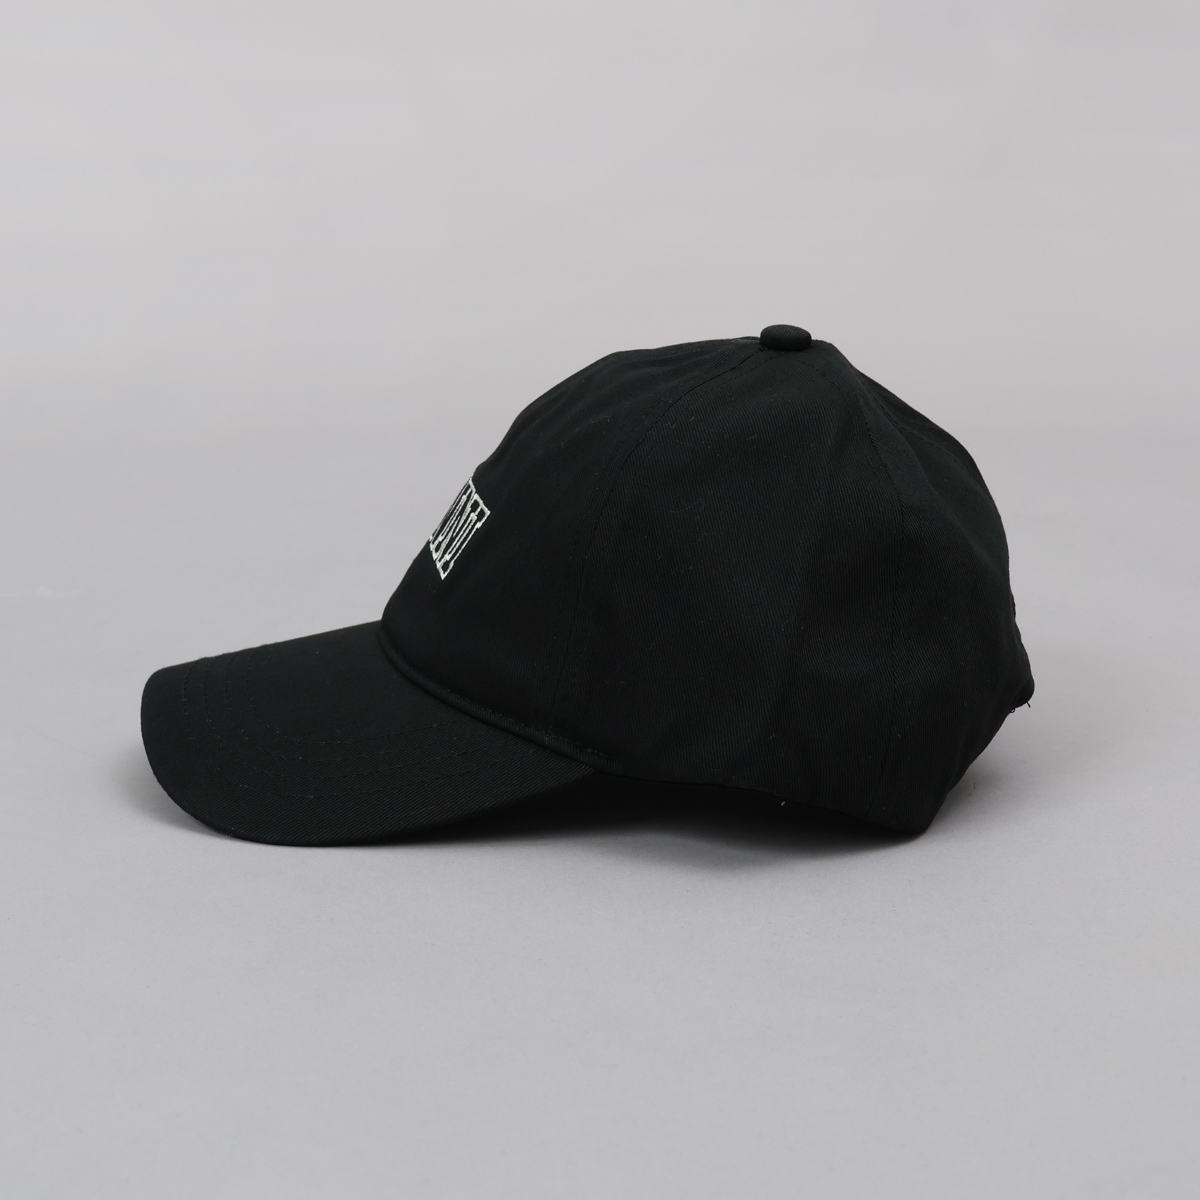 ガニー GANNI 帽子 キャップ ロゴ シンプル 人気 おしゃれ ブランド A4968 5890 メンズ レディース ユニセックス